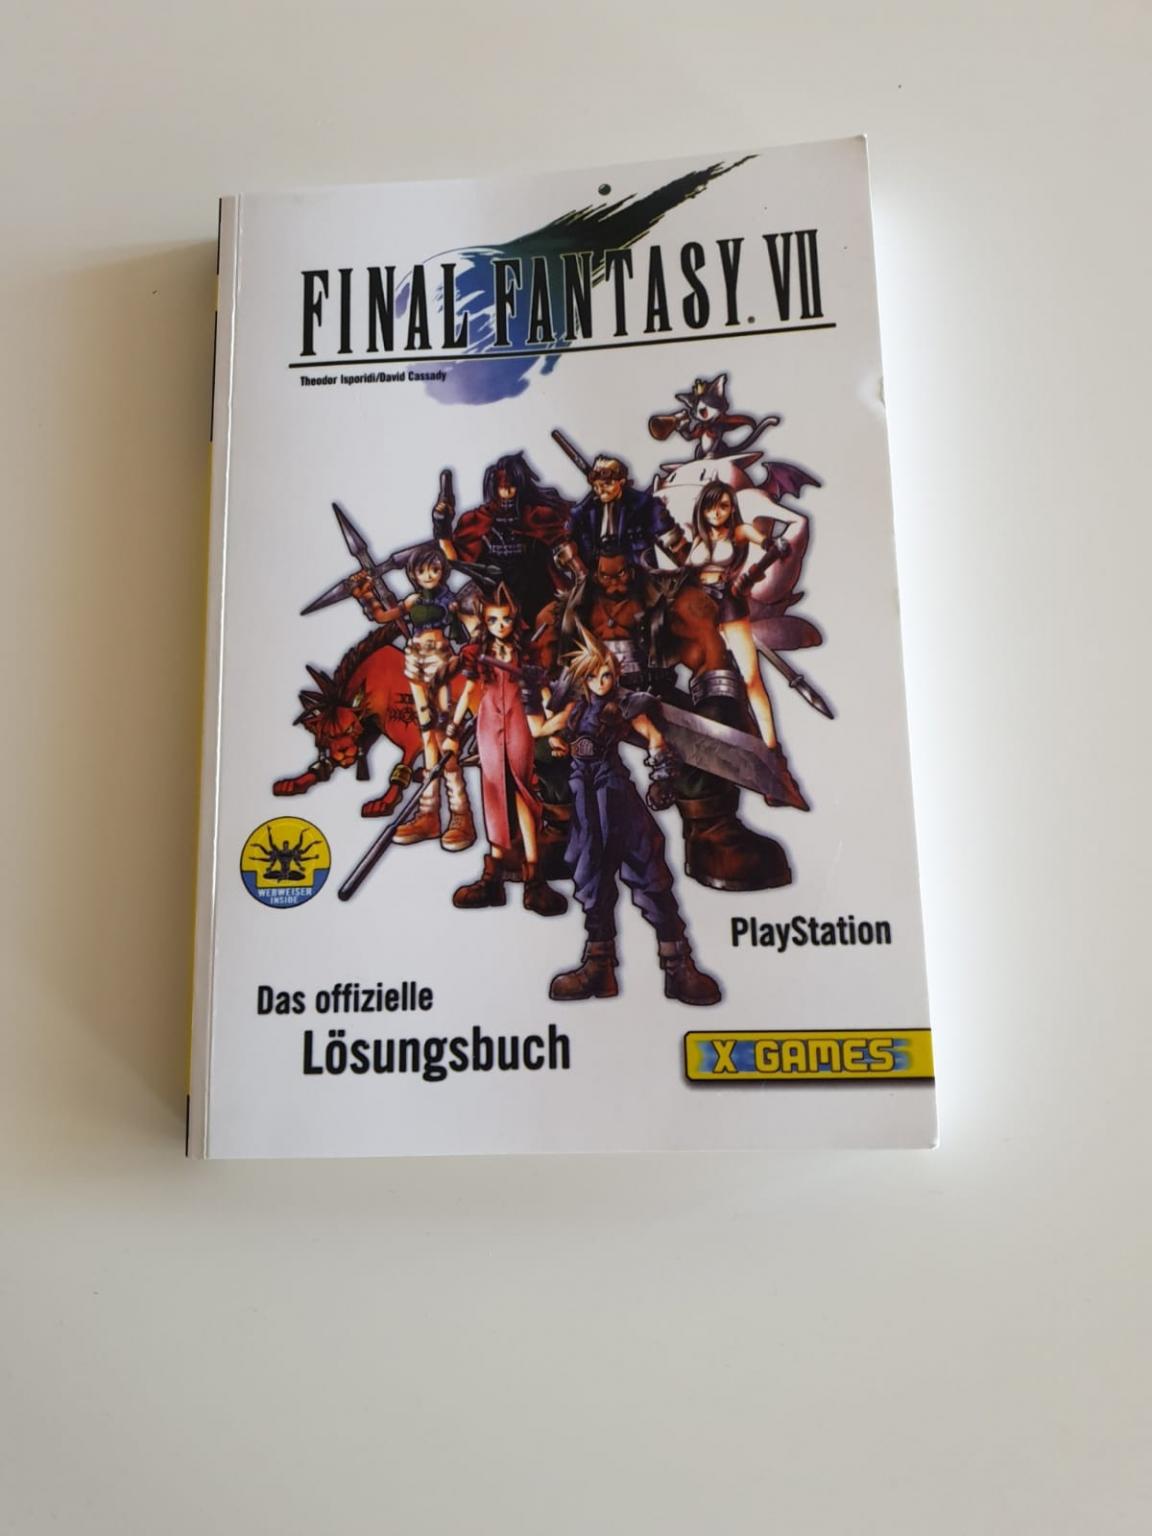 Final Fantasy 7 Vii Offizielle Losungsbuch In 67227 Frankenthal Pfalz Fur 40 50 Zum Verkauf Shpock At